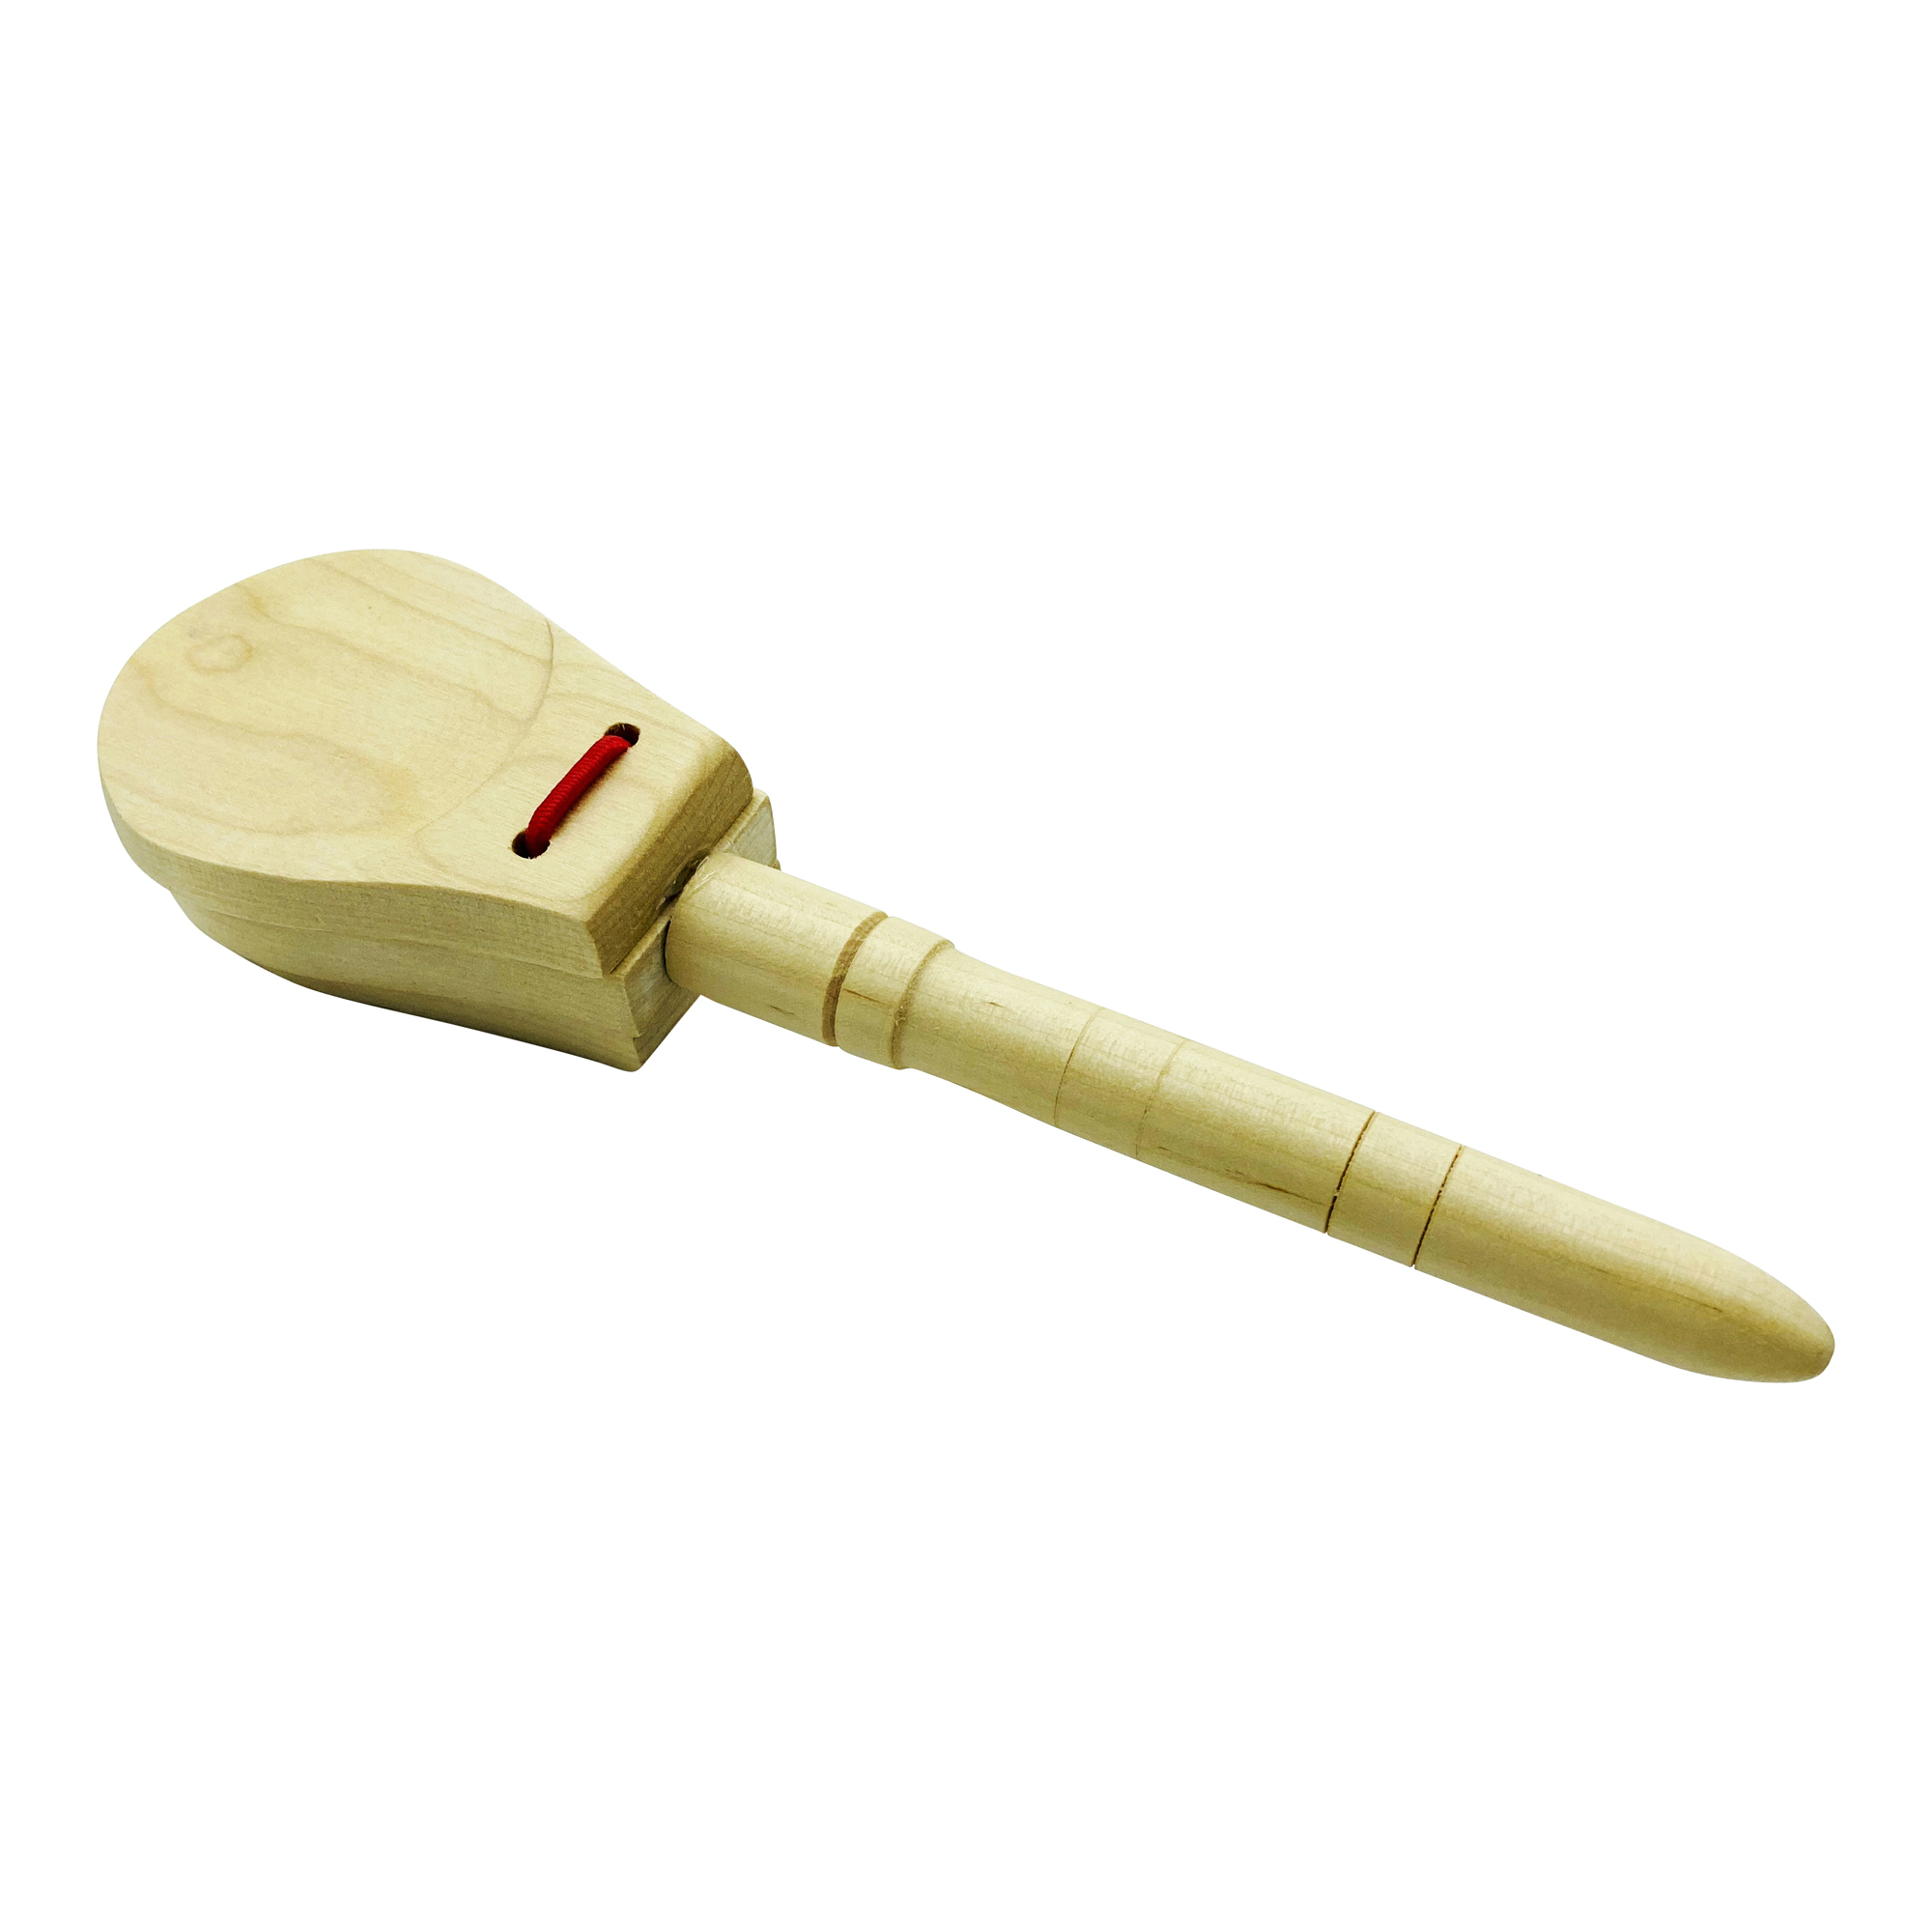 Kastagnetten Stielkastagnetten aus Holz für Kinder Musikinstrument - Länge 23 cm - 3860